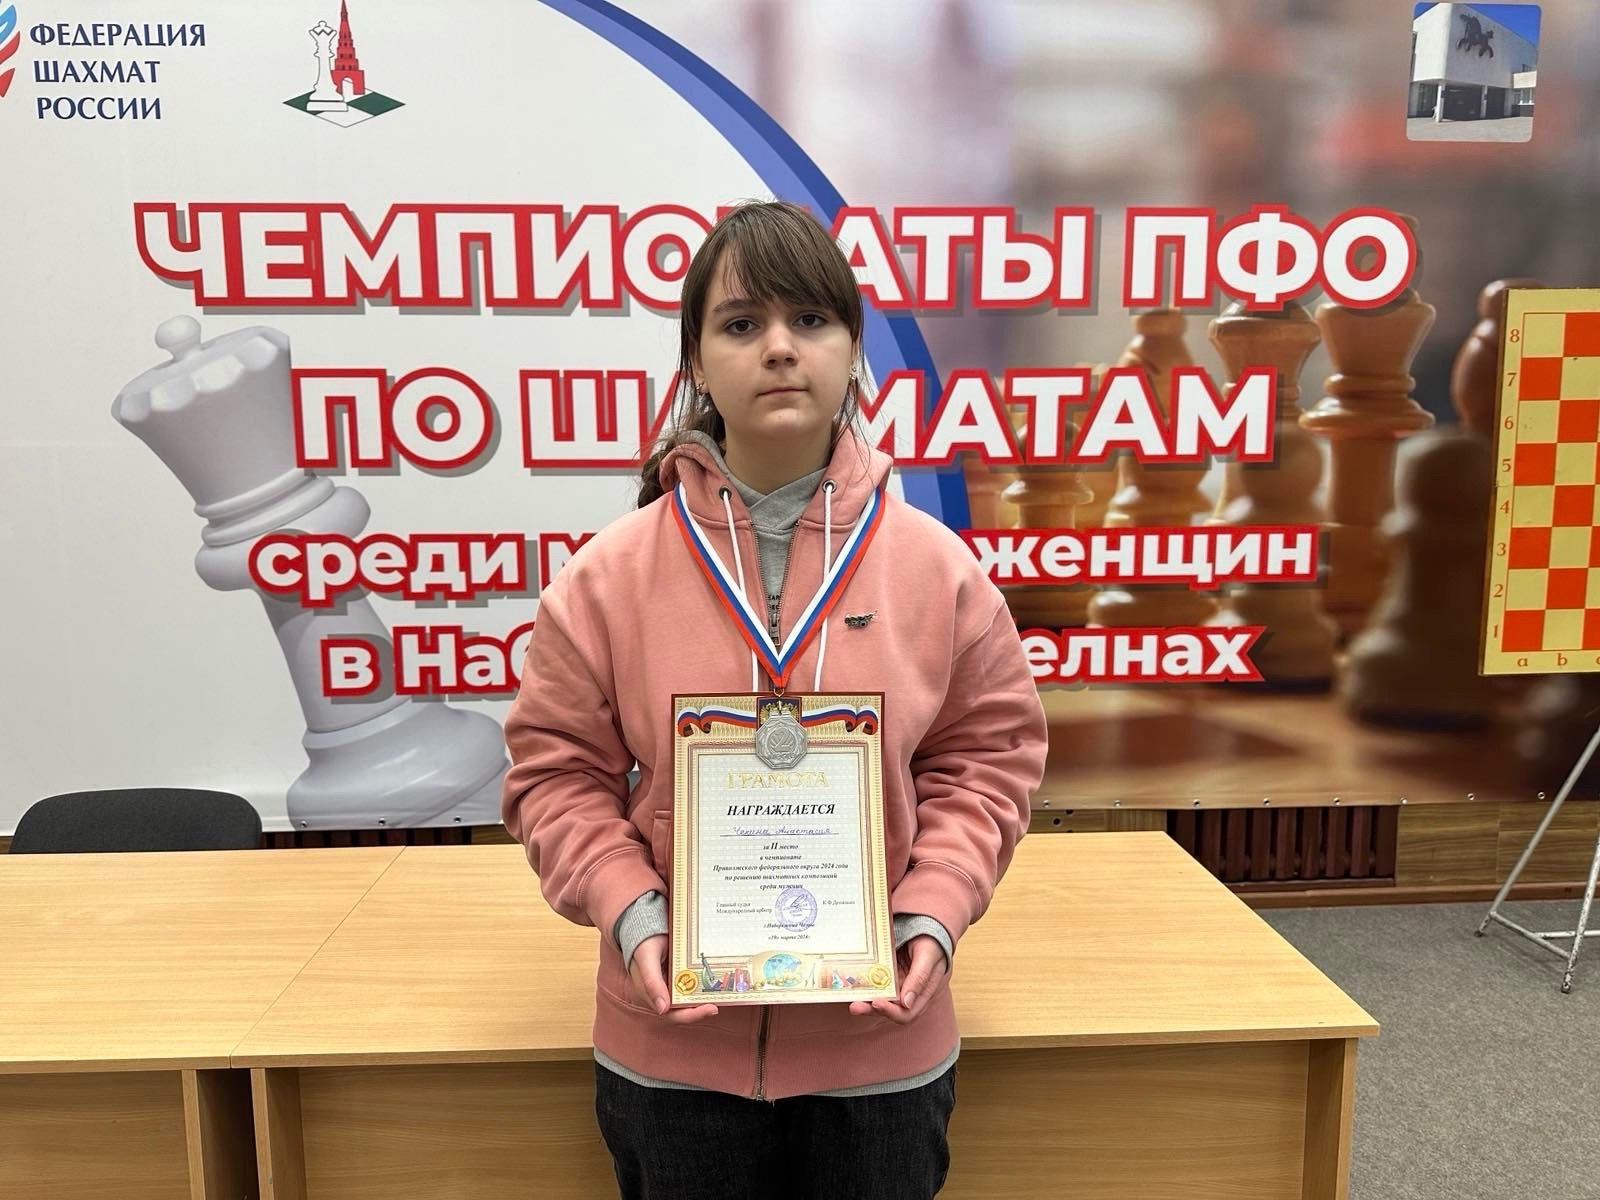 Ученица 8 «Б» класса Настя Чекина заняла 2 место в чемпионате Приволжского федерального округа по решению шахматных композиций среди мужчин и женщин.